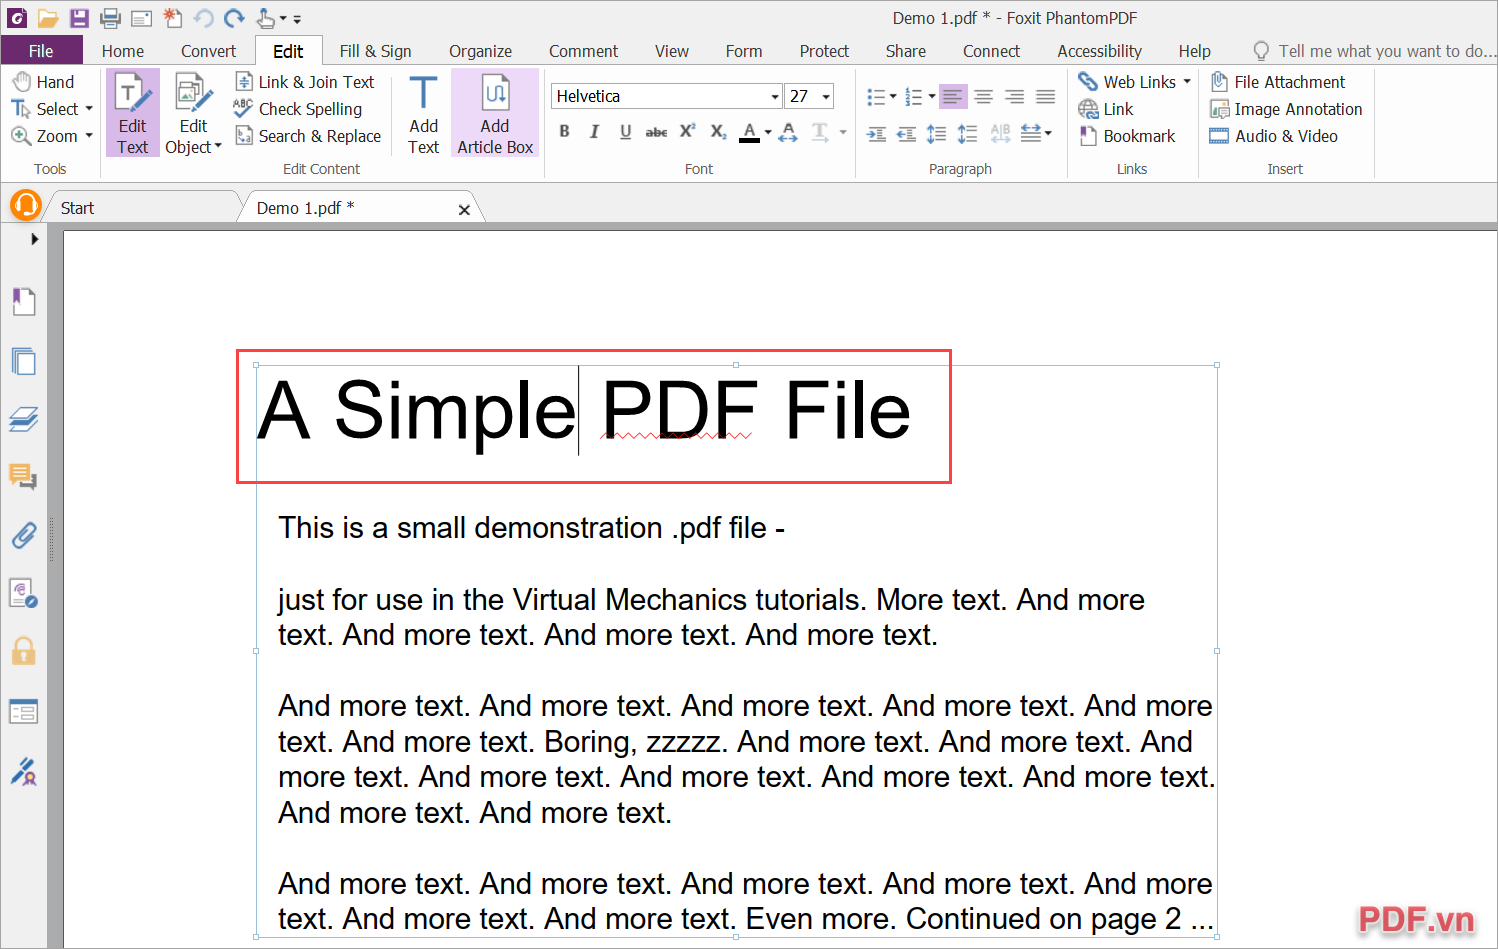 Bạn có thể chỉnh sửa file PDF như soạn thảo văn bản